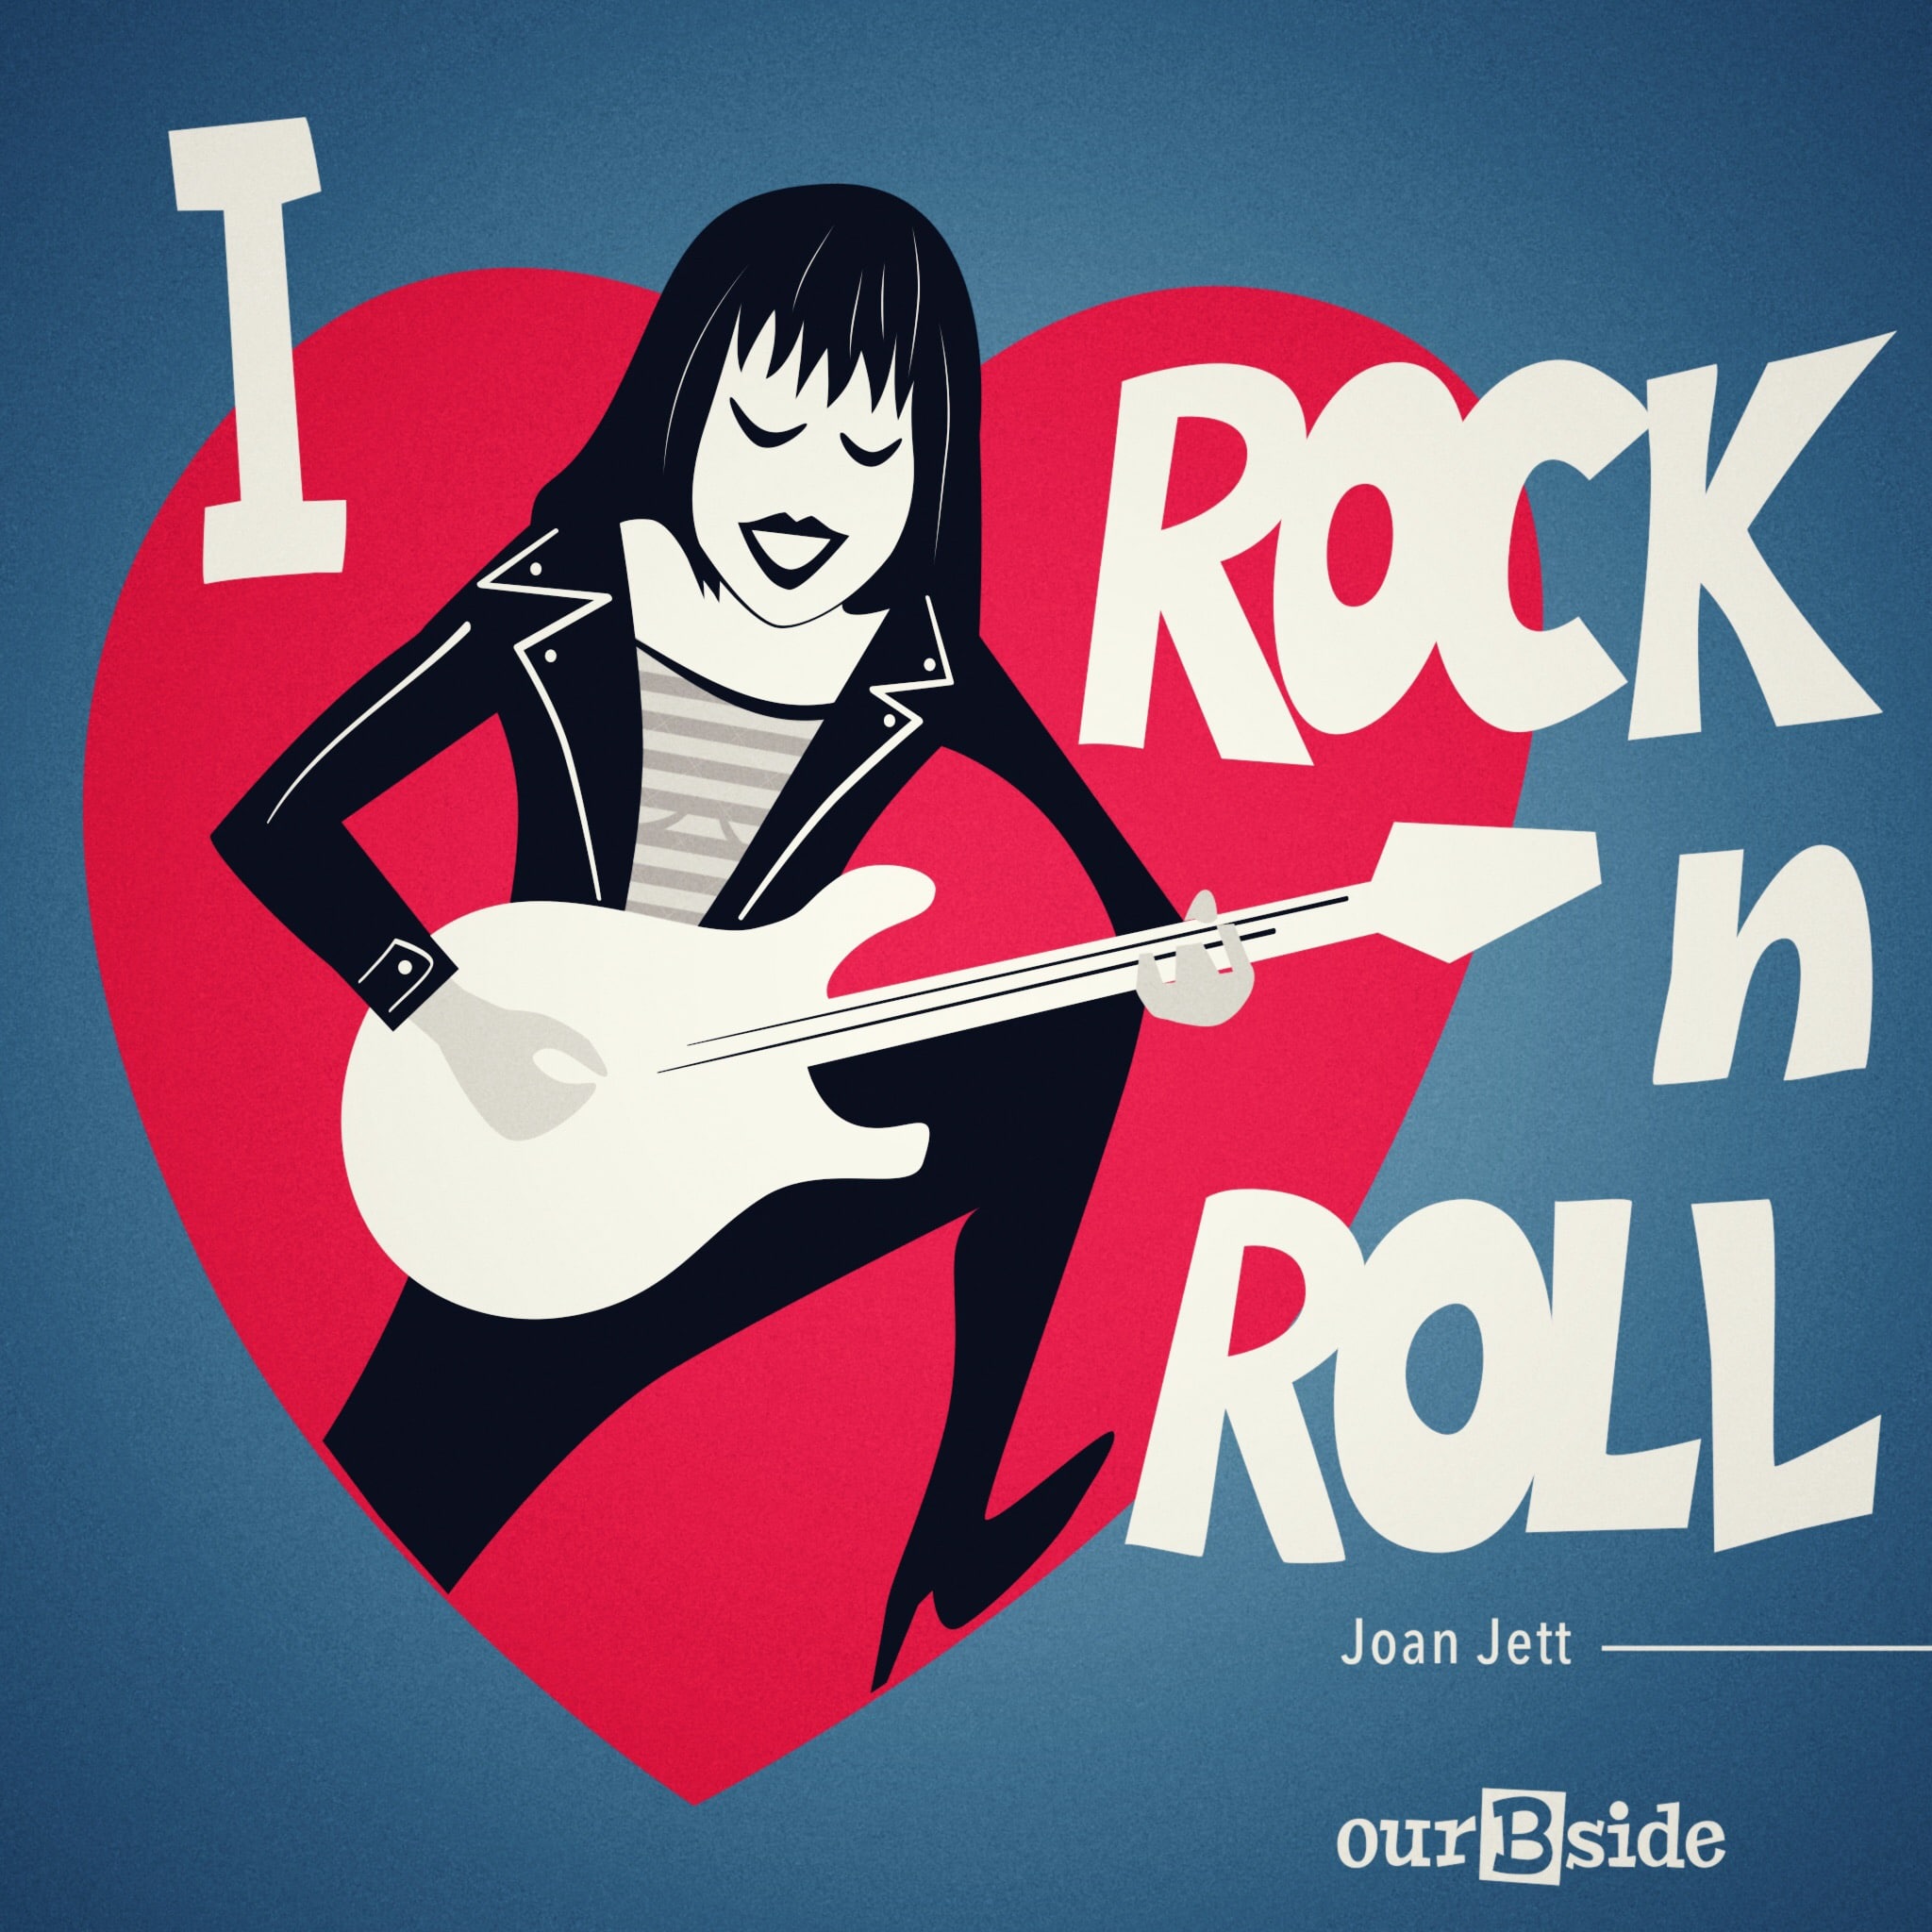 I Love Rock 'n Roll - Joan Jett